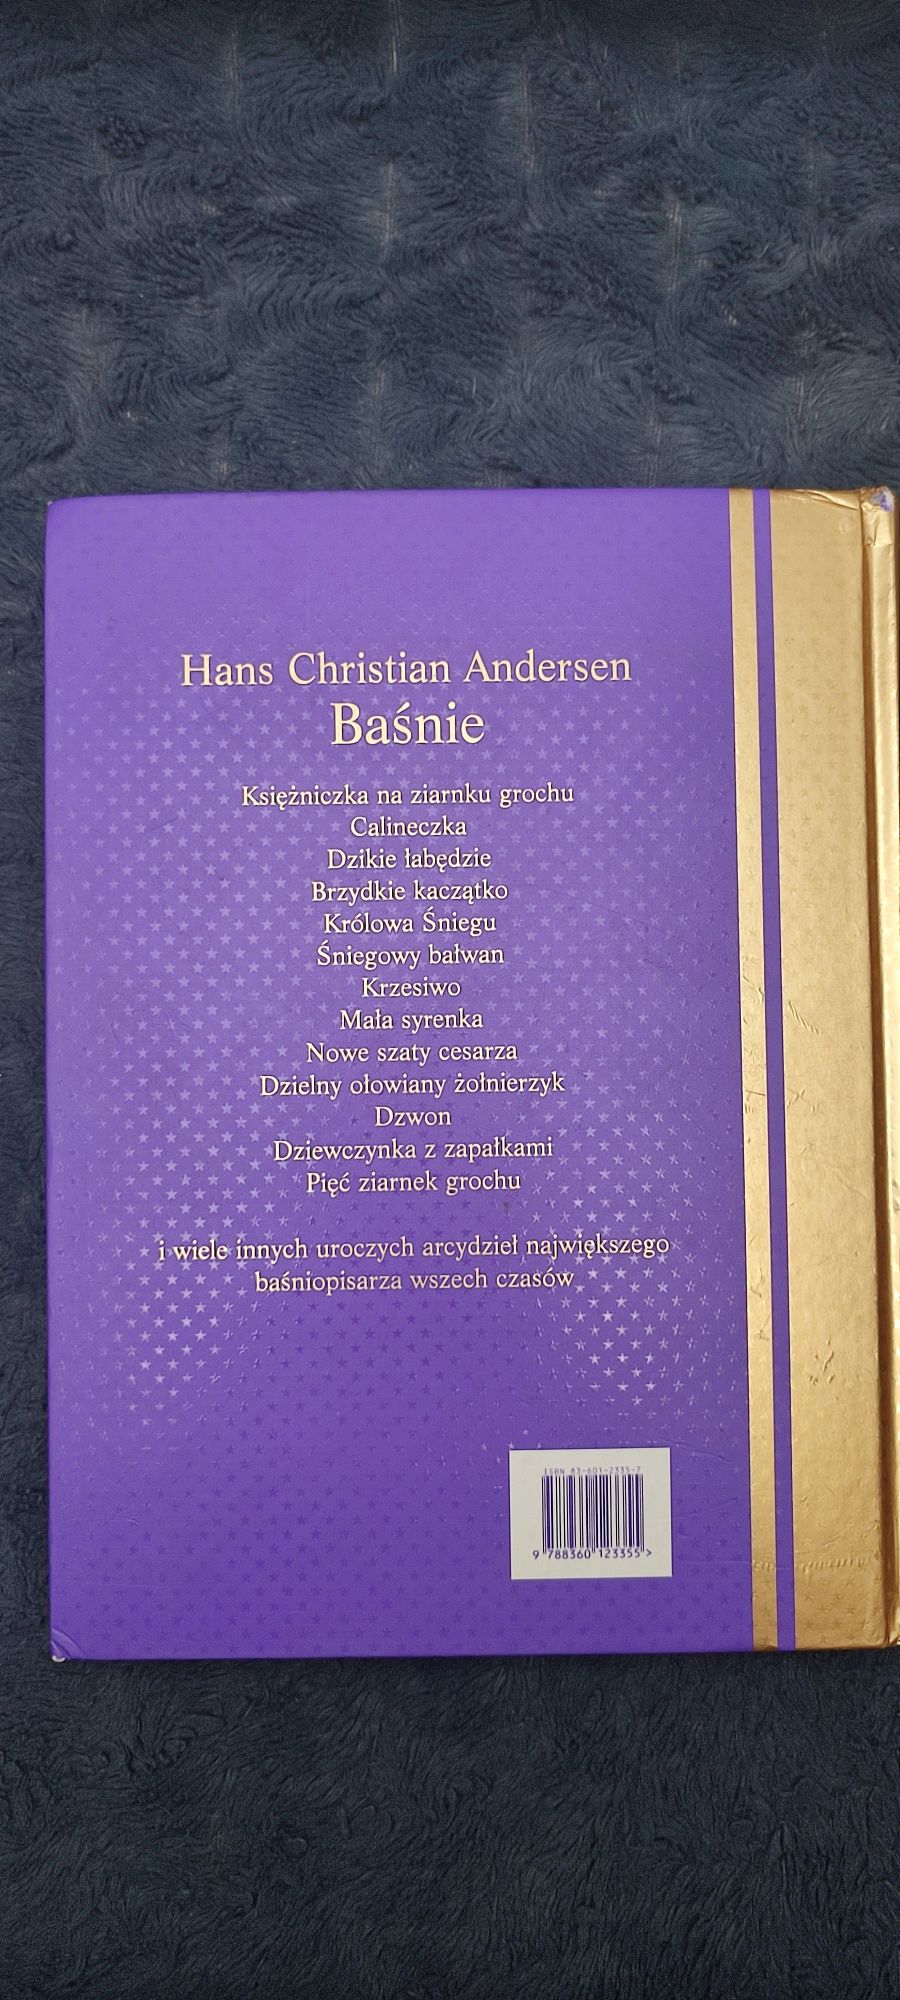 Baśnie Hansa Christiana Andersena piękne wydanie